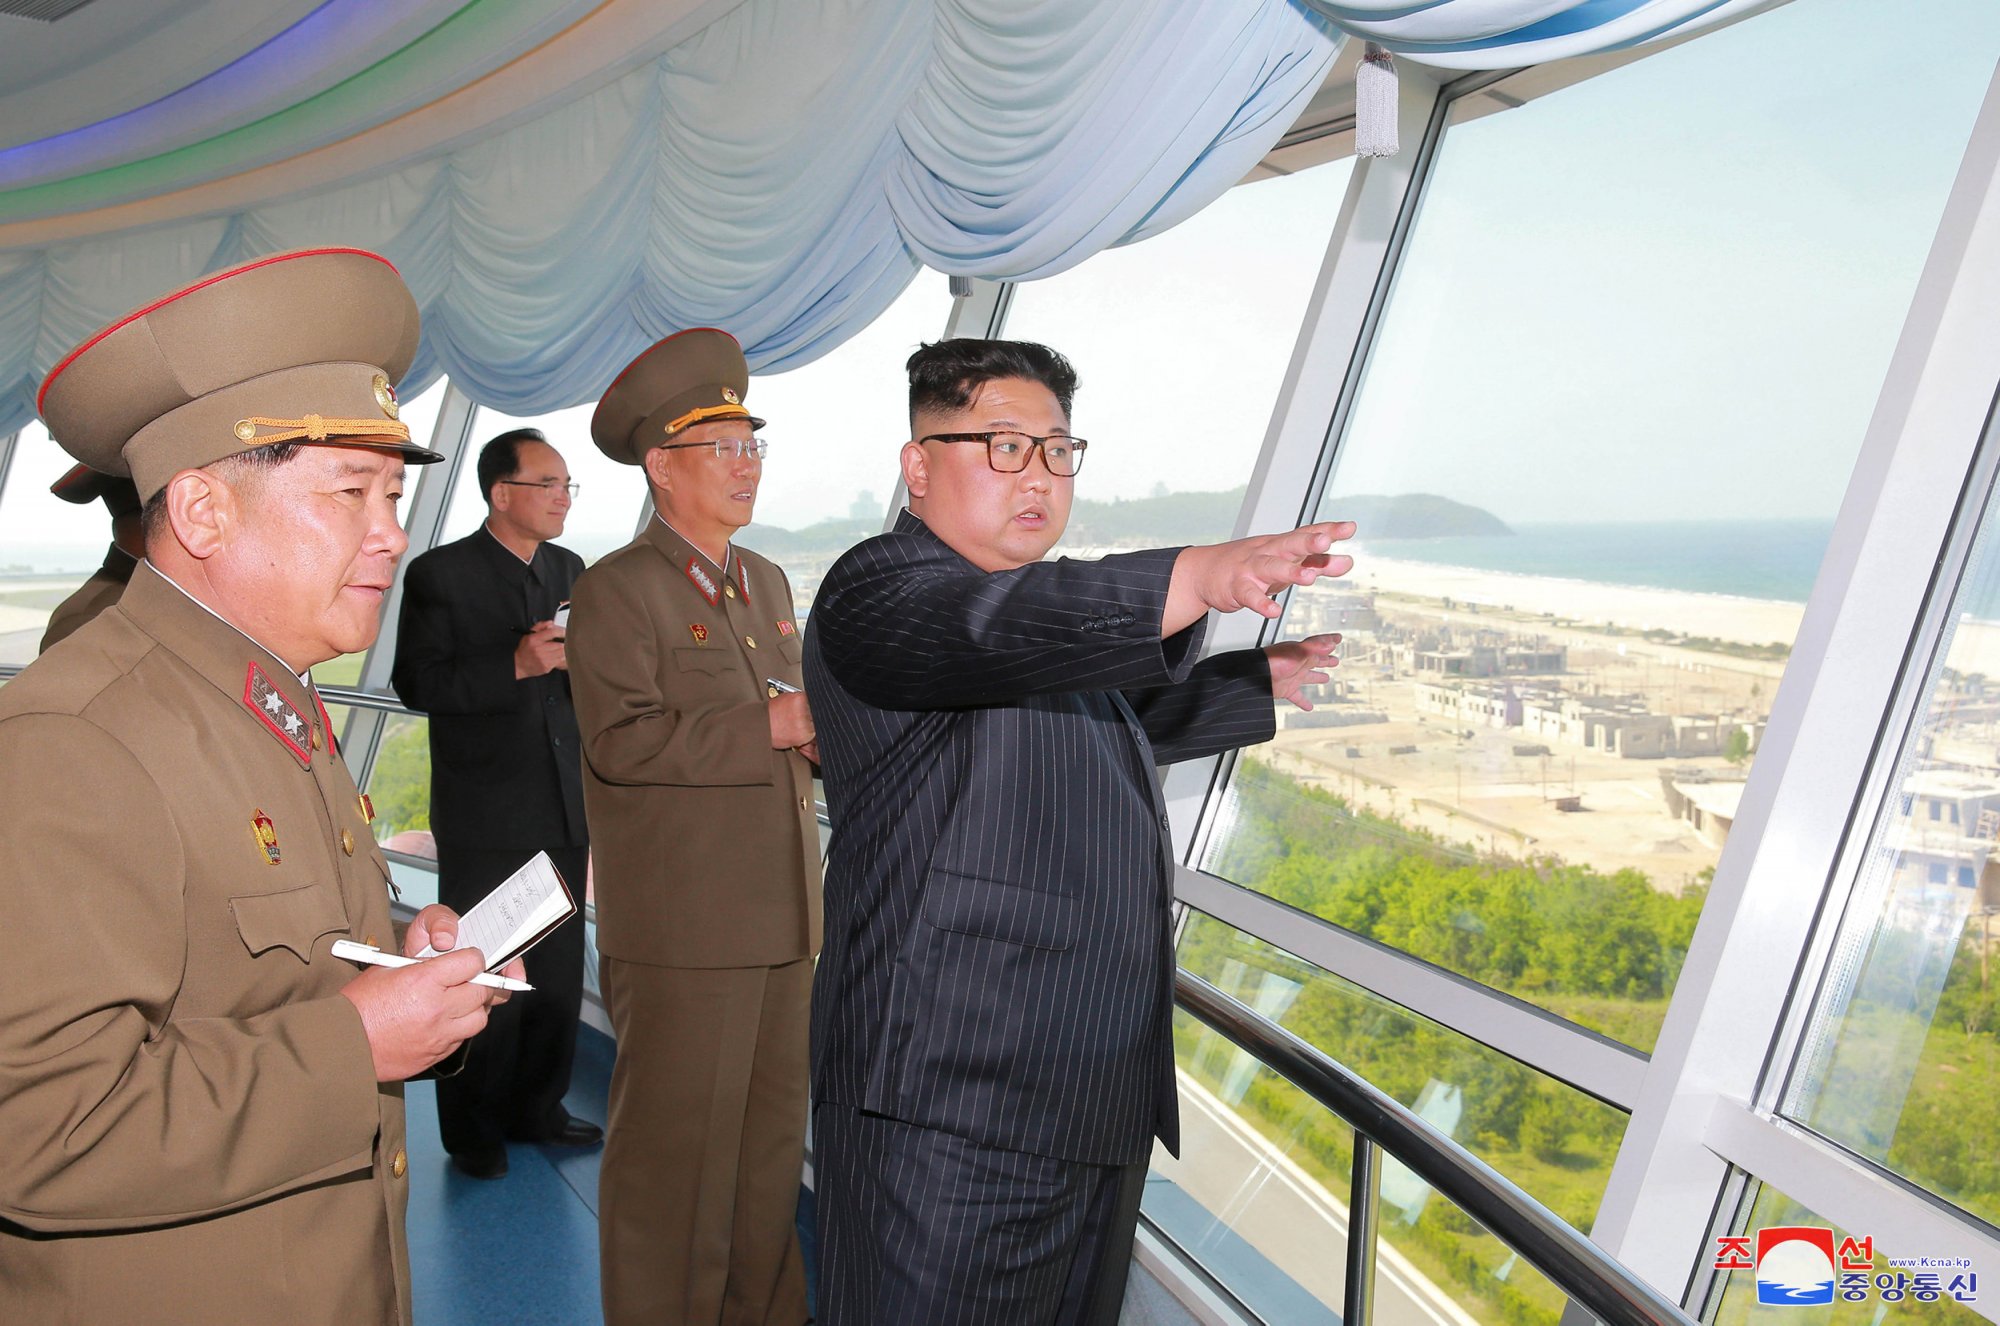 Βόρεια Κορέα: Τουριστικό θέρετρο... αλά Ισπανία - Ξενοδοχεία, βίλες και πισίνες χτίζει ο Κιμ Γιονγκ Ουν